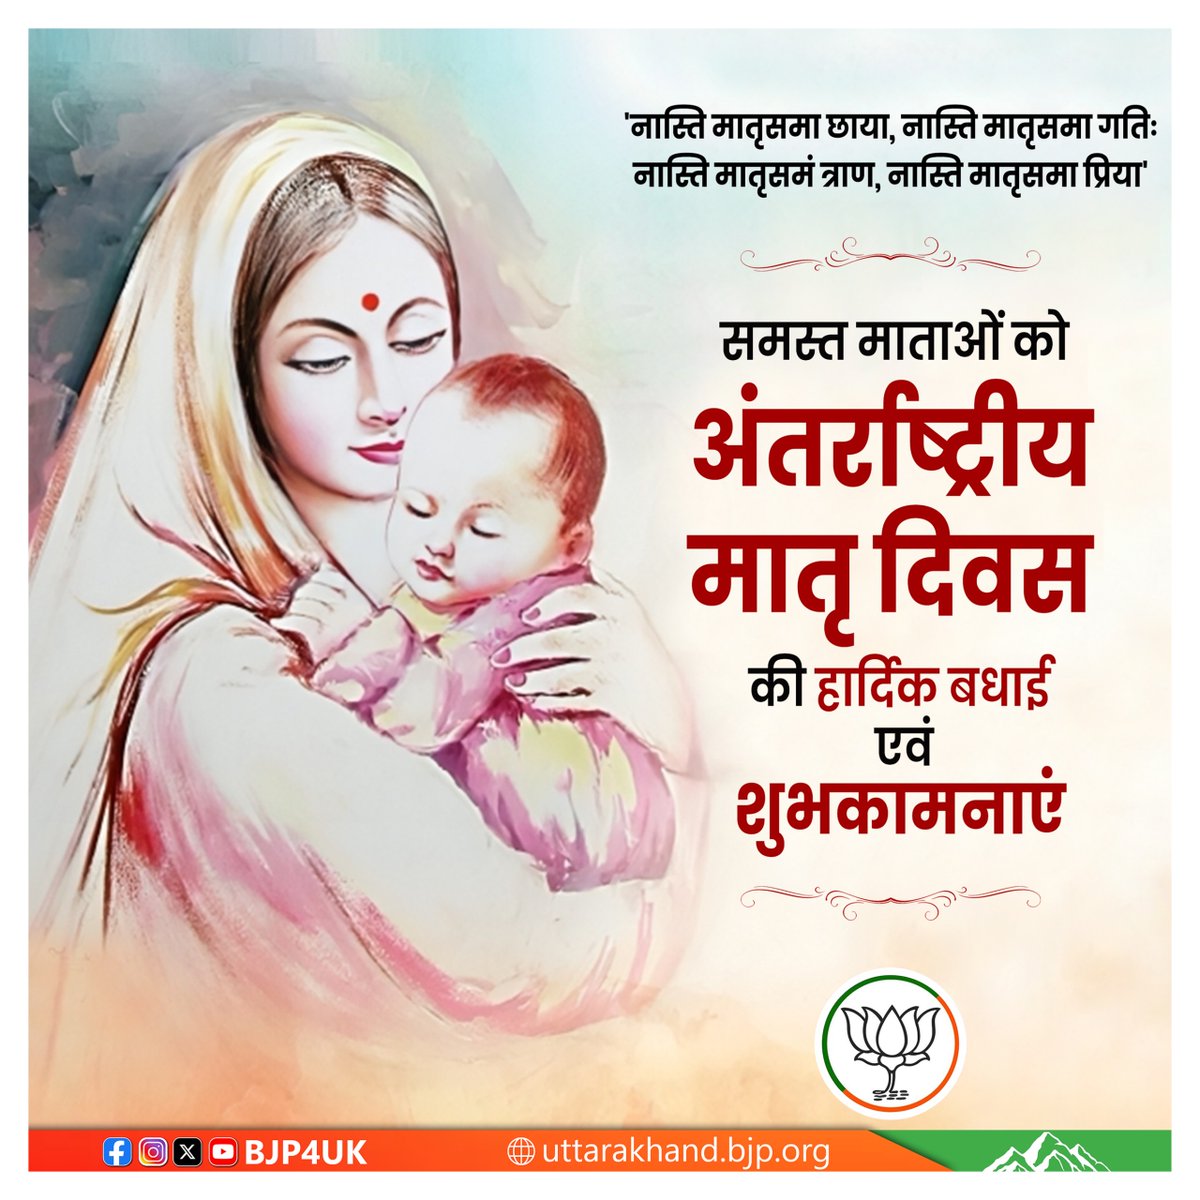 समस्त माताओं को अंतर्राष्ट्रीय मातृ दिवस की हार्दिक बधाई एवं शुभकामनाएं!